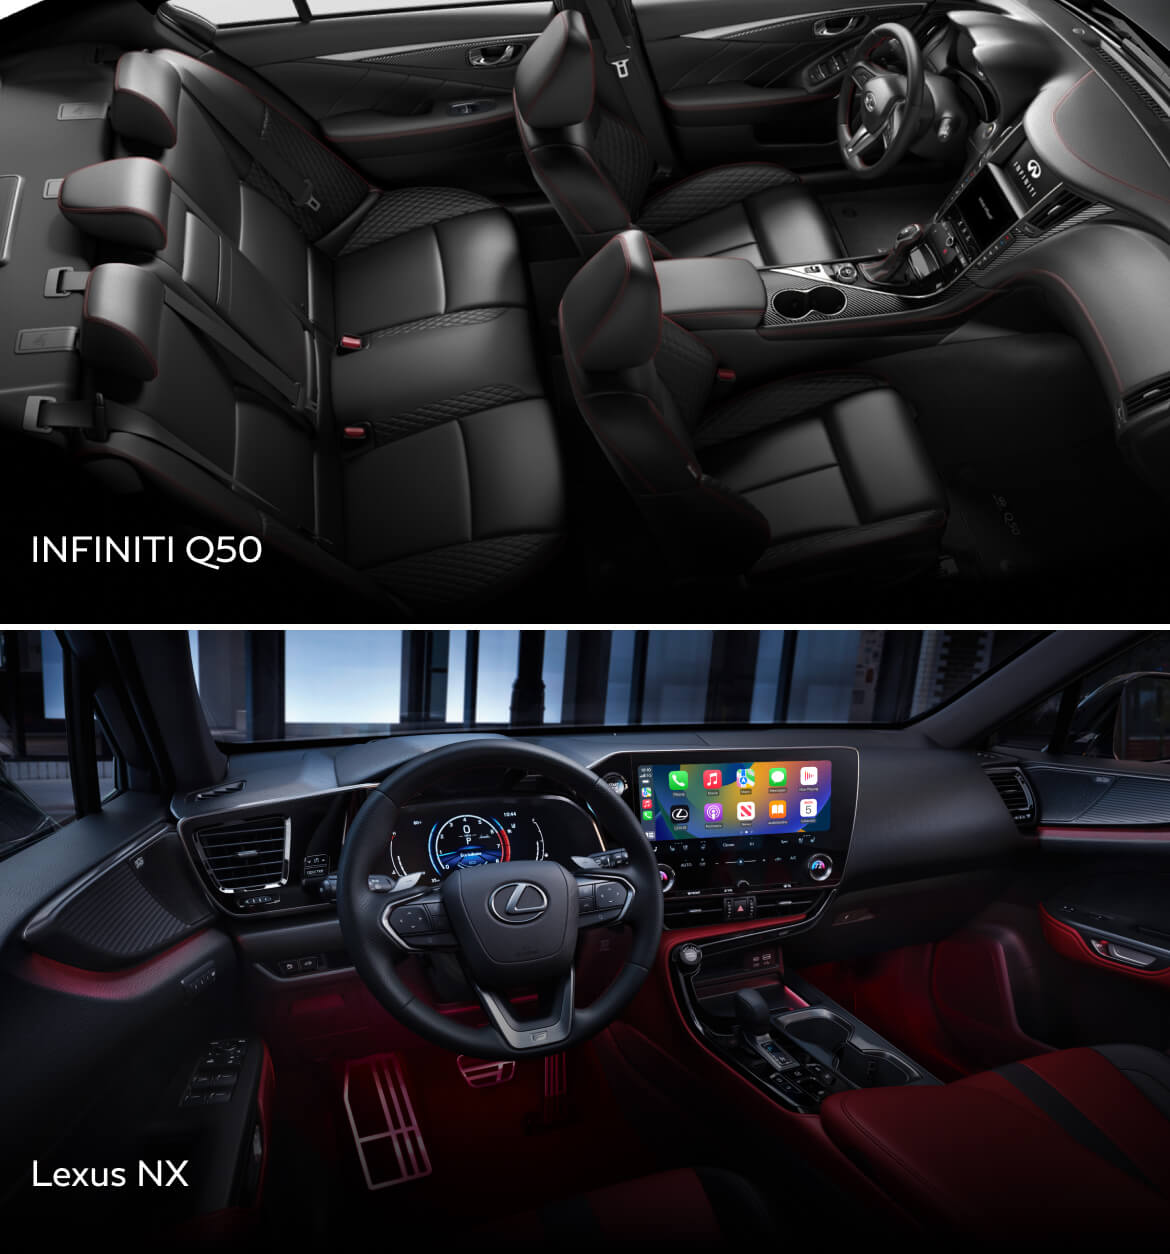 INFINITI QX50 vs. Lexus NX Interior and Features